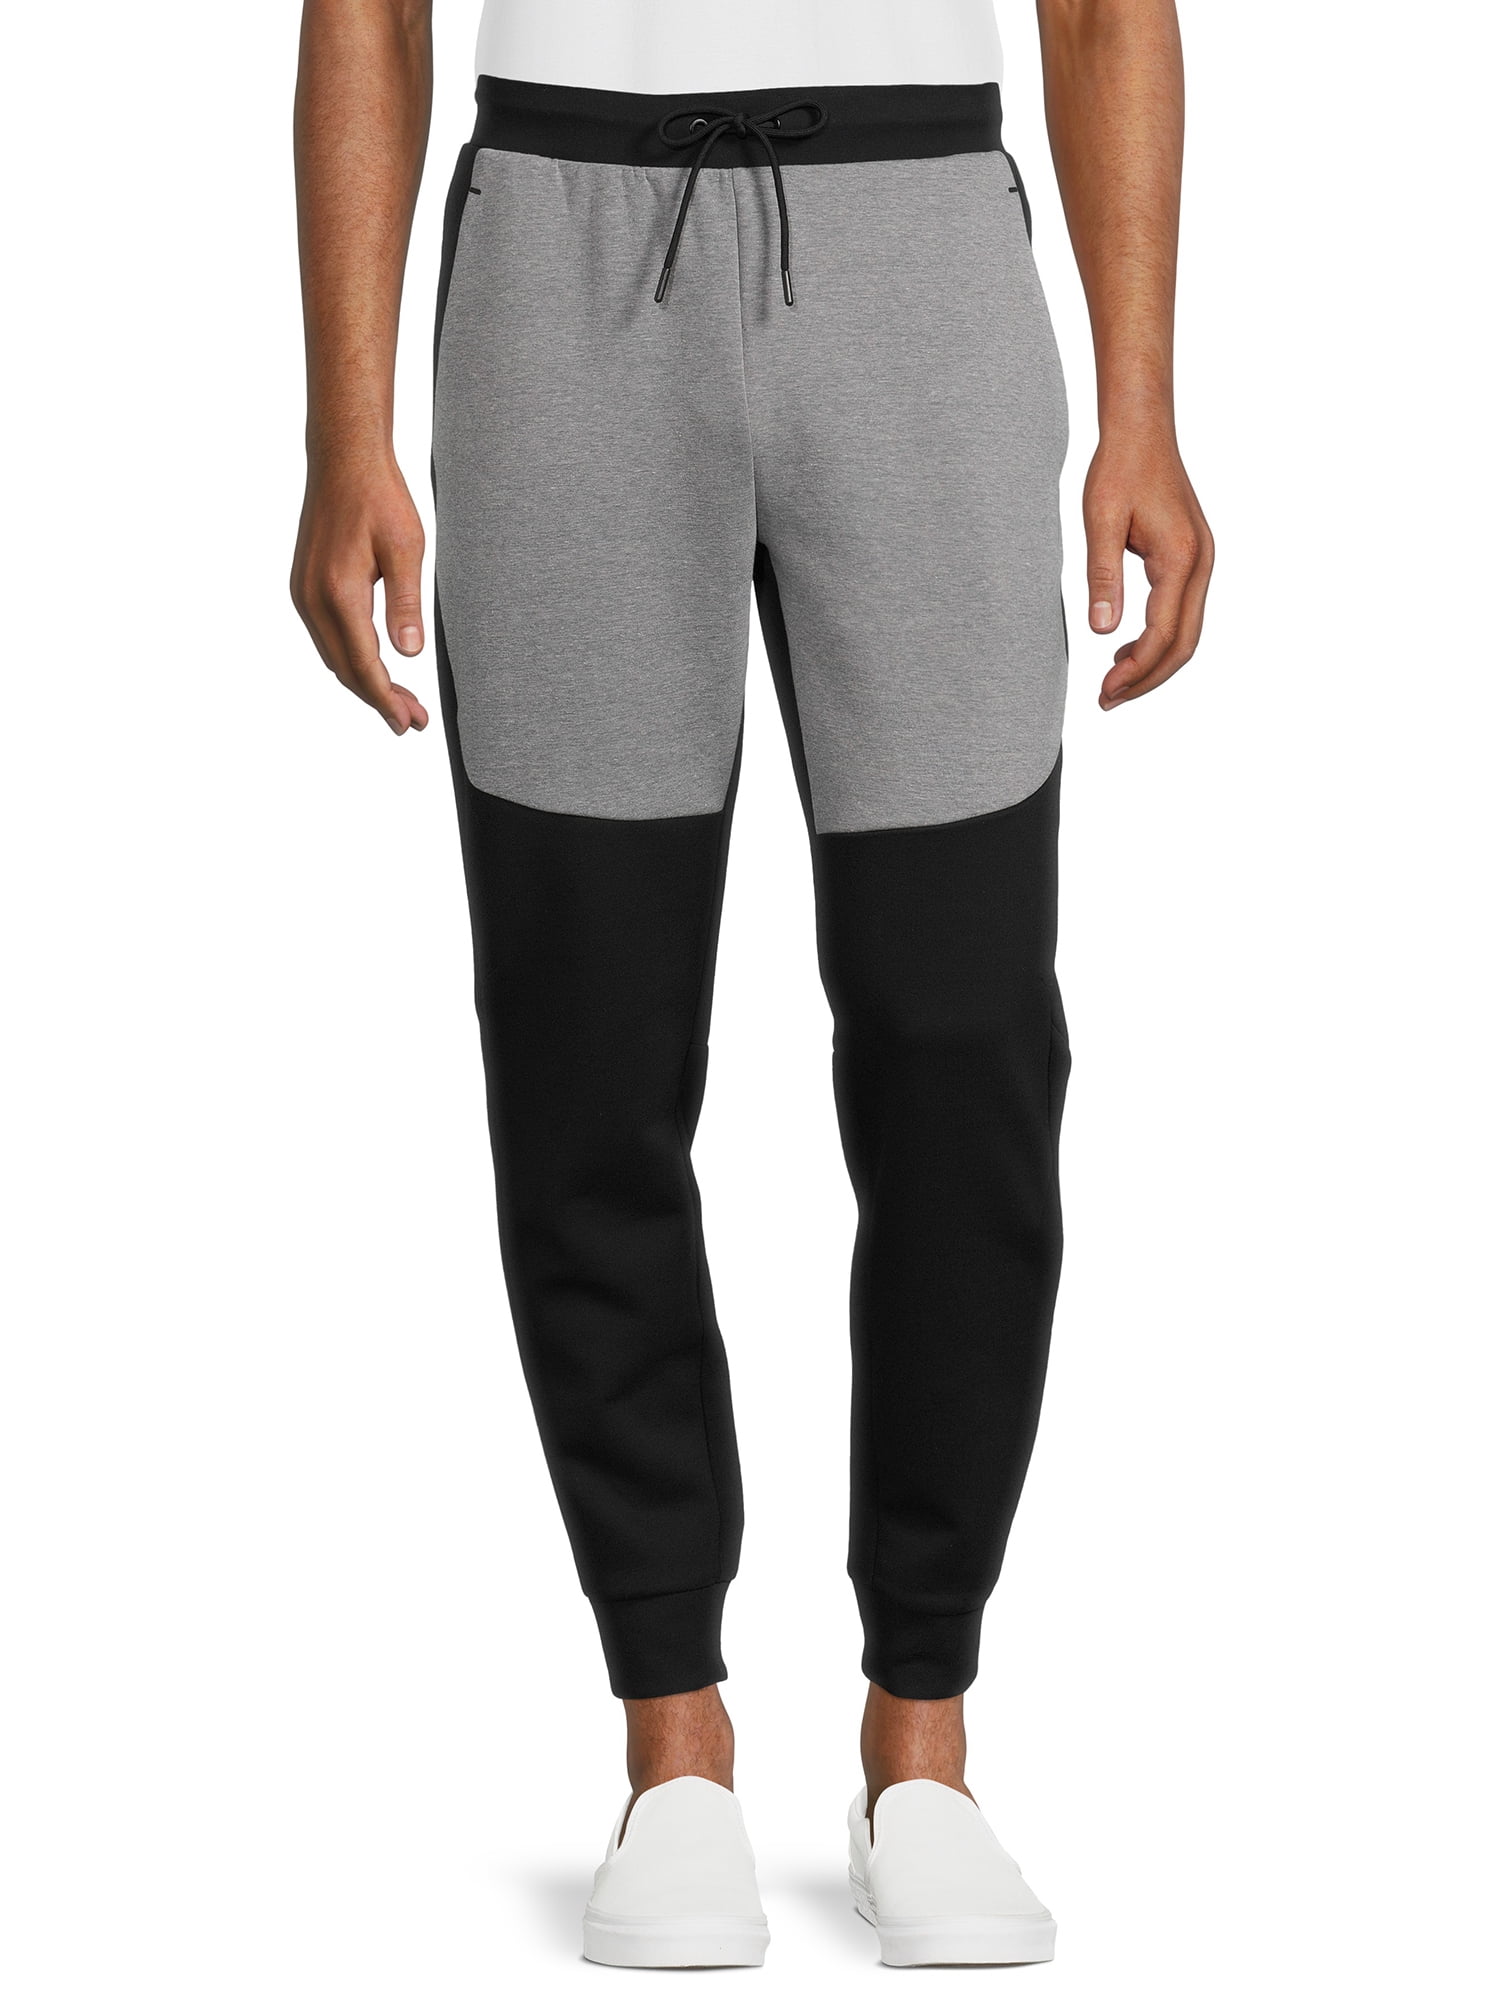 Men's Jogger Sweatpants Slim Fit Nylon Stretch Athletic Pants | MIER |  Reviews on Judge.me